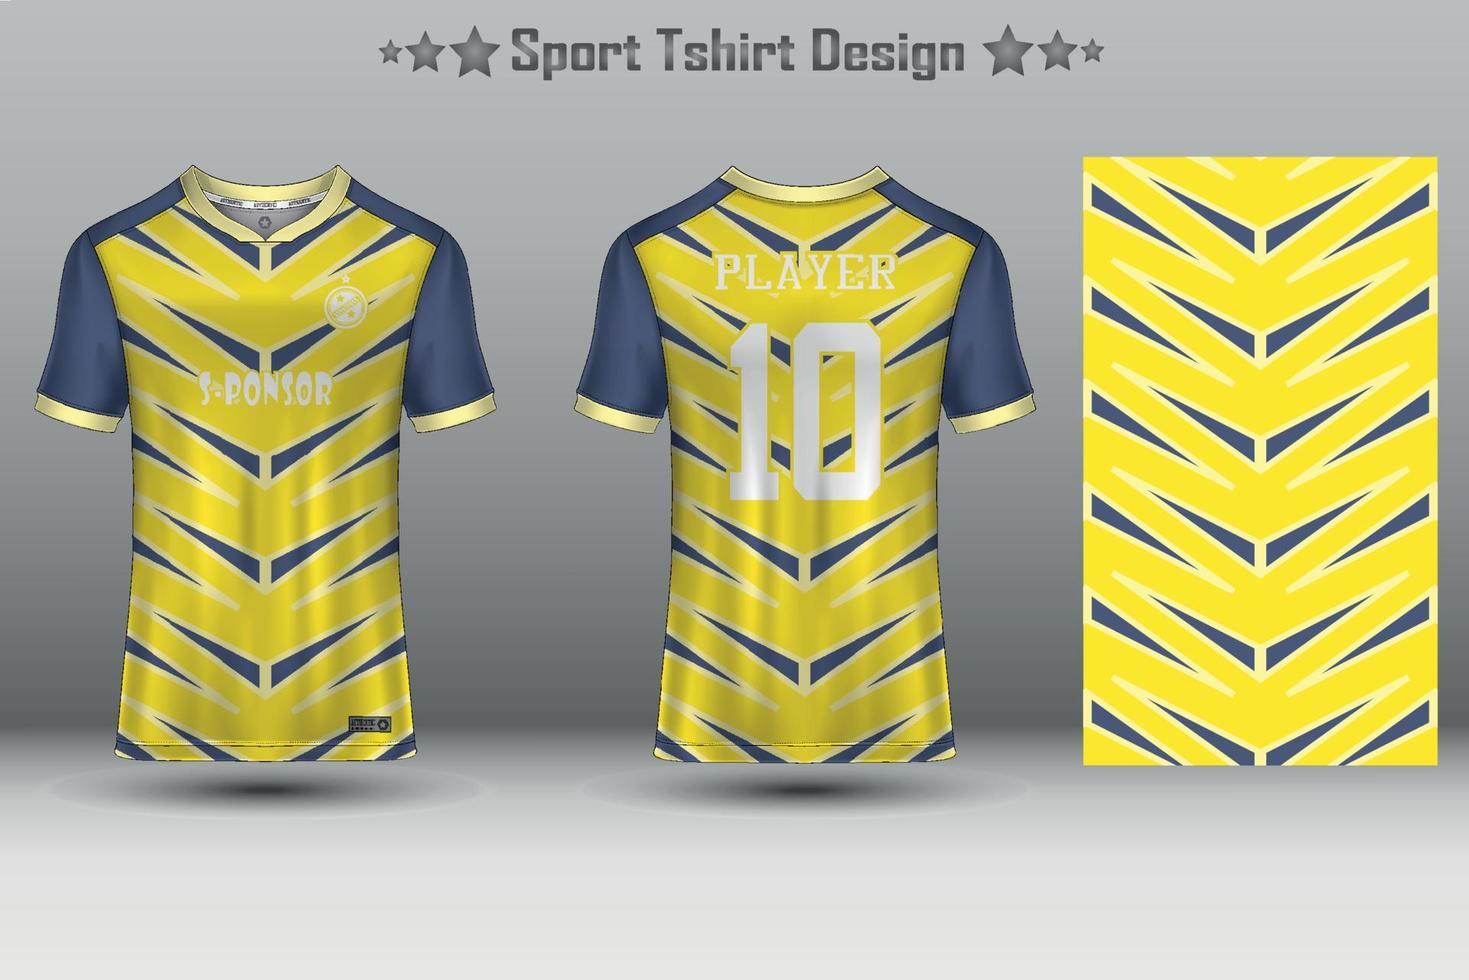 voetbal Jersey mockup Amerikaans voetbal Jersey ontwerp sublimatie sport t overhemd ontwerp verzameling voor racen, wielersport, gamen, motorcross vector